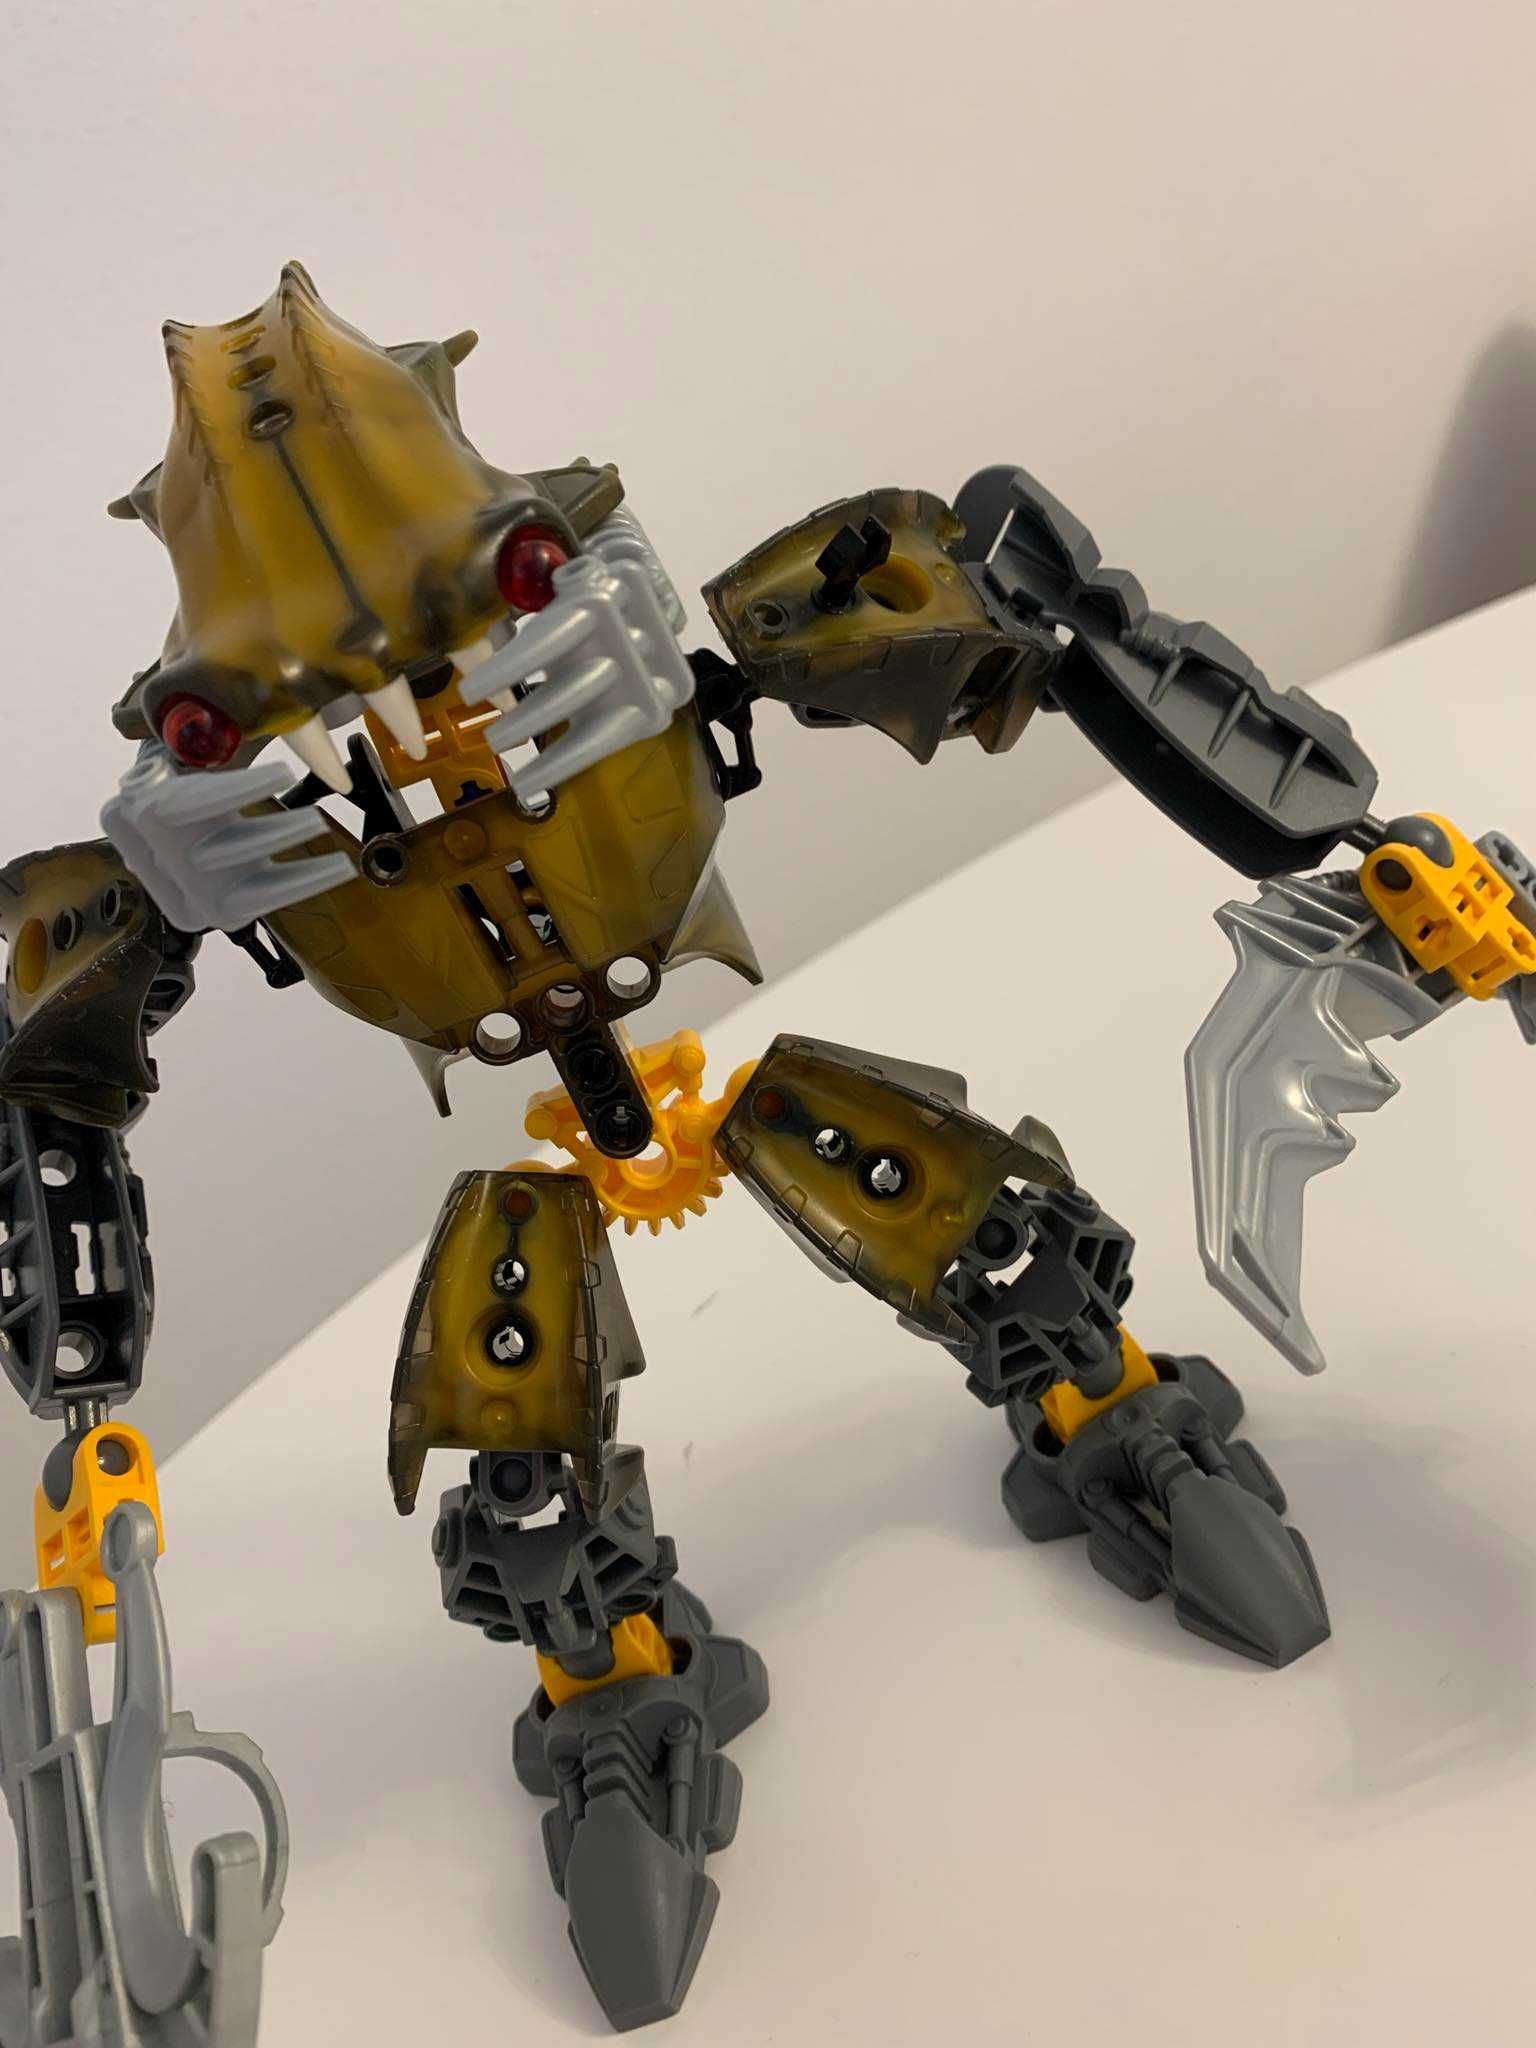 8918 LEGO Bionicle Barraki Carapar